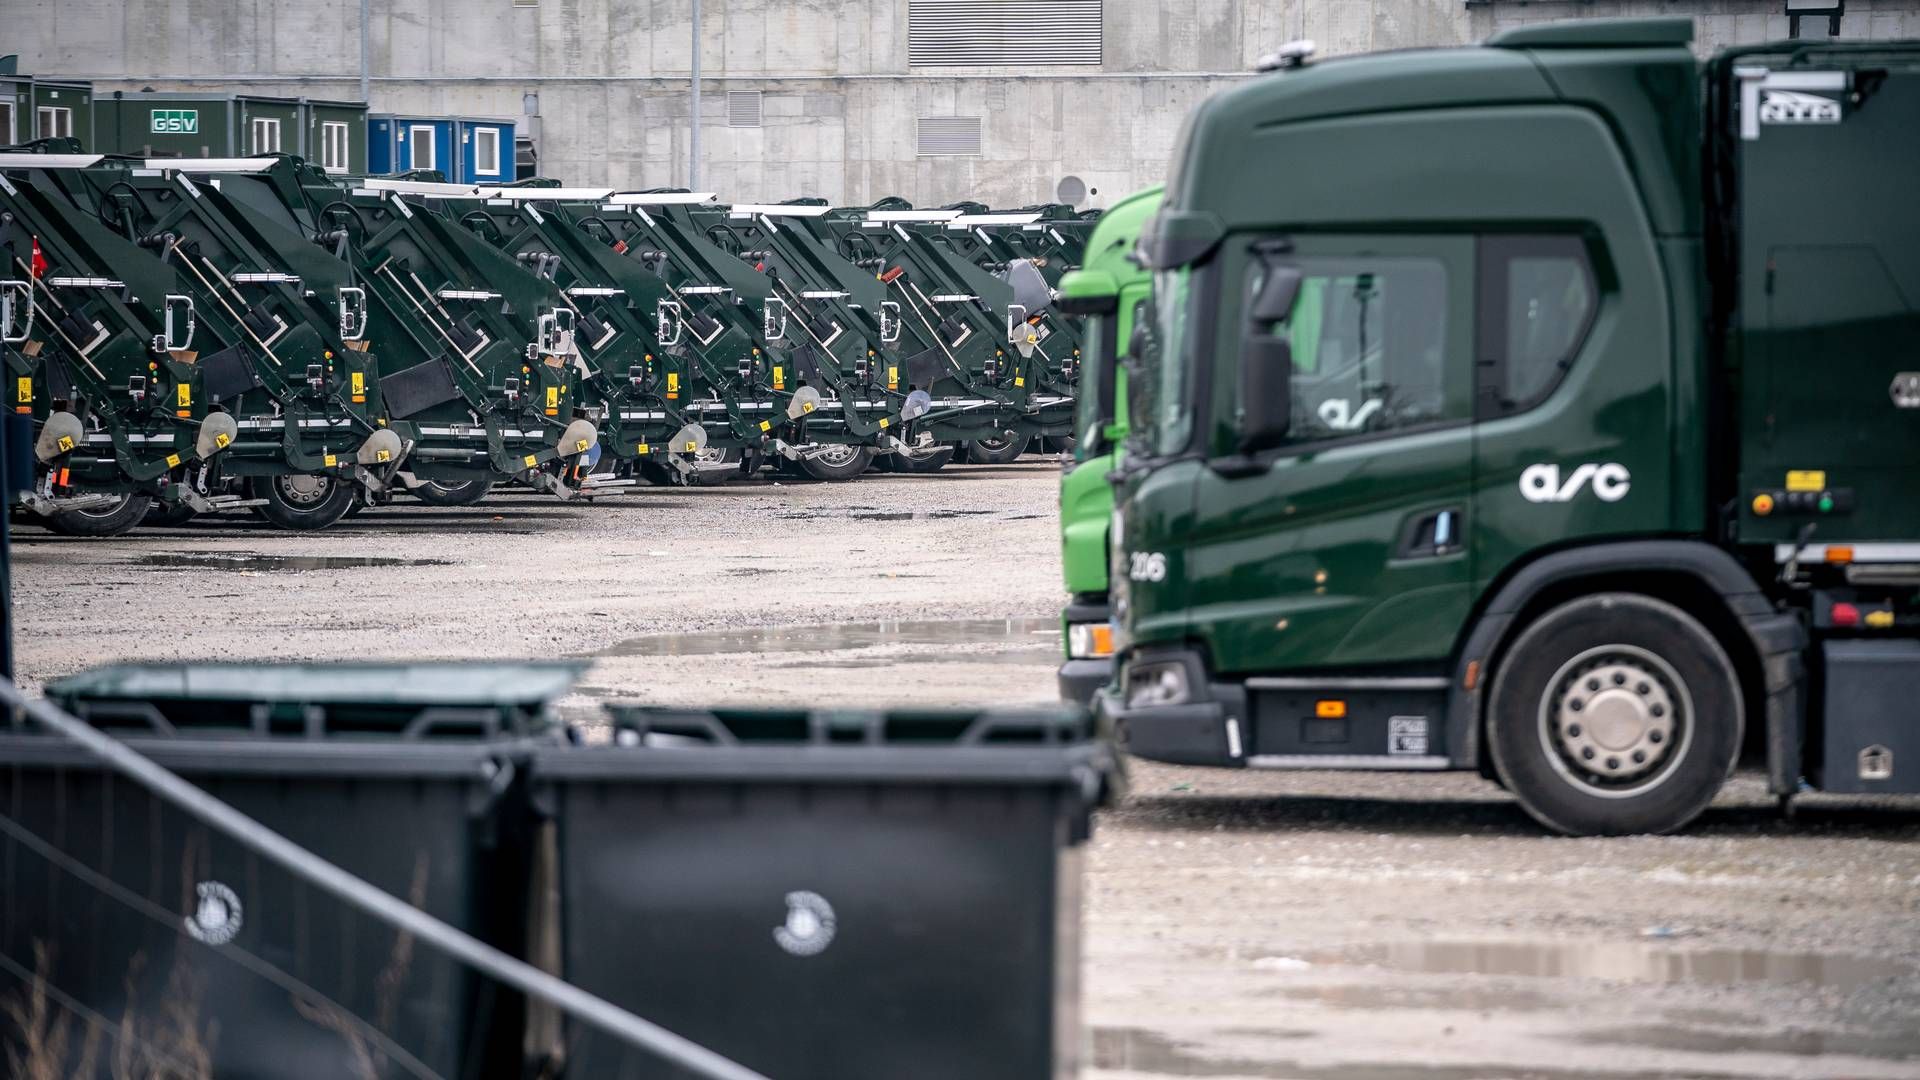 ARC's grønne el-skraldebiler har holdt stille siden mandag, hvor renovationsarbejderne indledte deres arbejdsnedlæggelse. | Foto: Mads Claus Rasmussen/Ritzau Scanpix